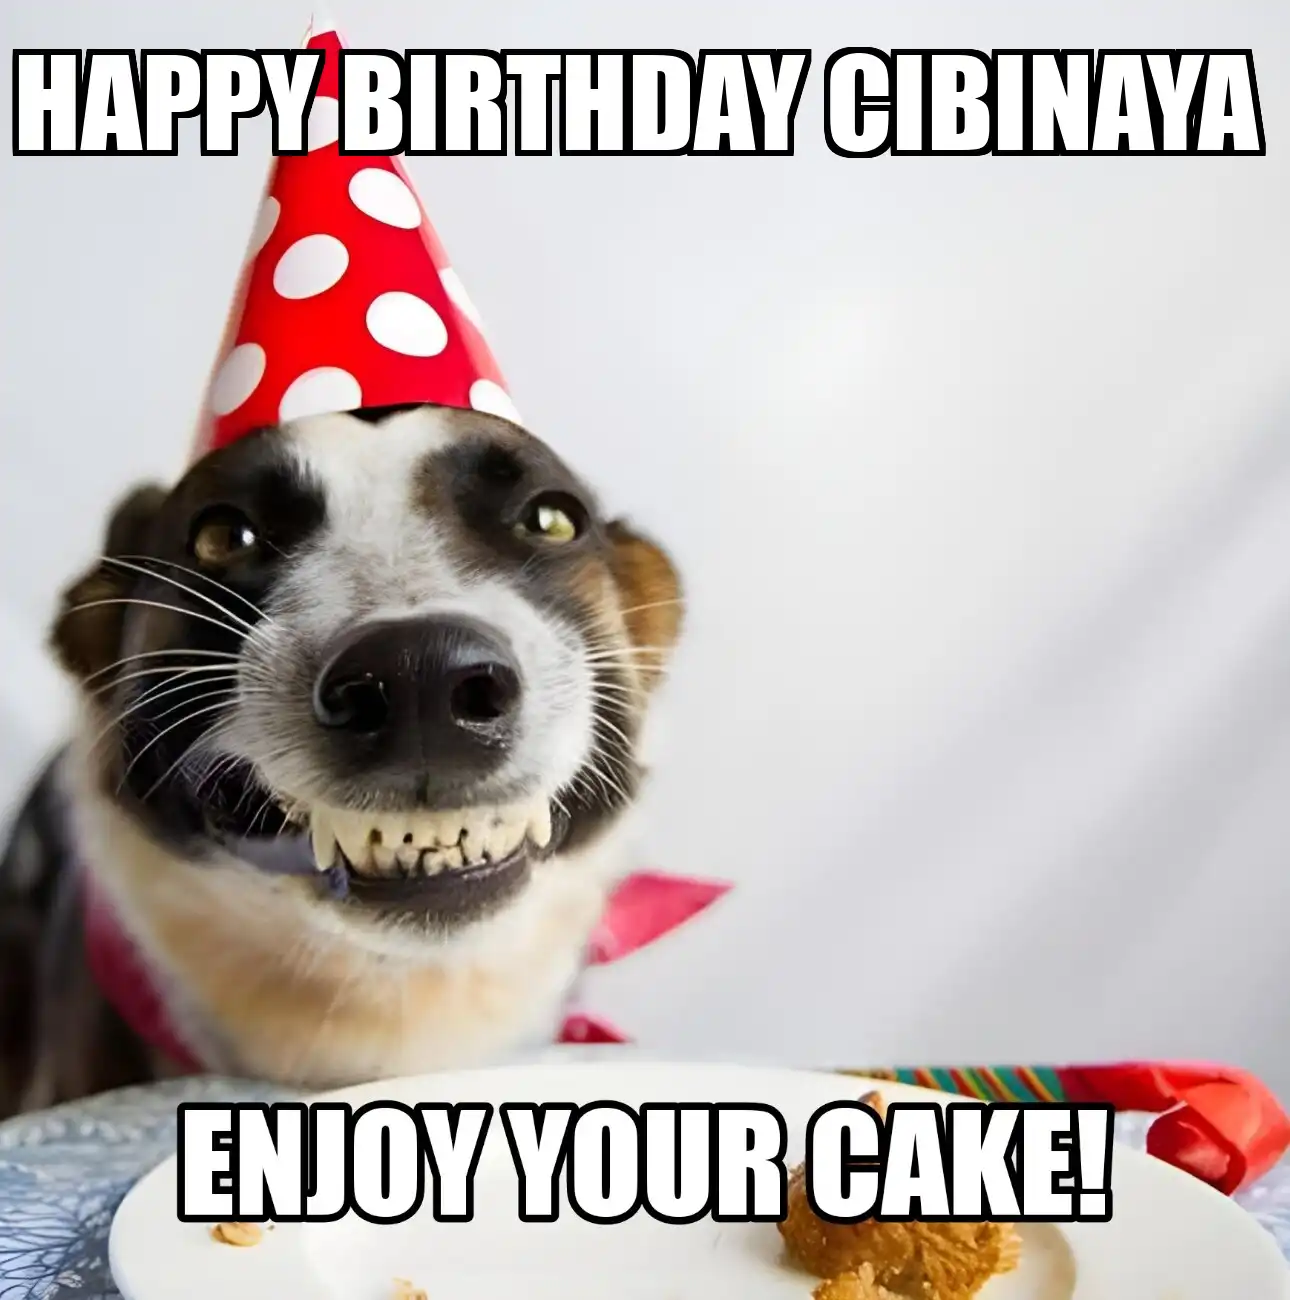 Happy Birthday Cibinaya Enjoy Your Cake Dog Meme